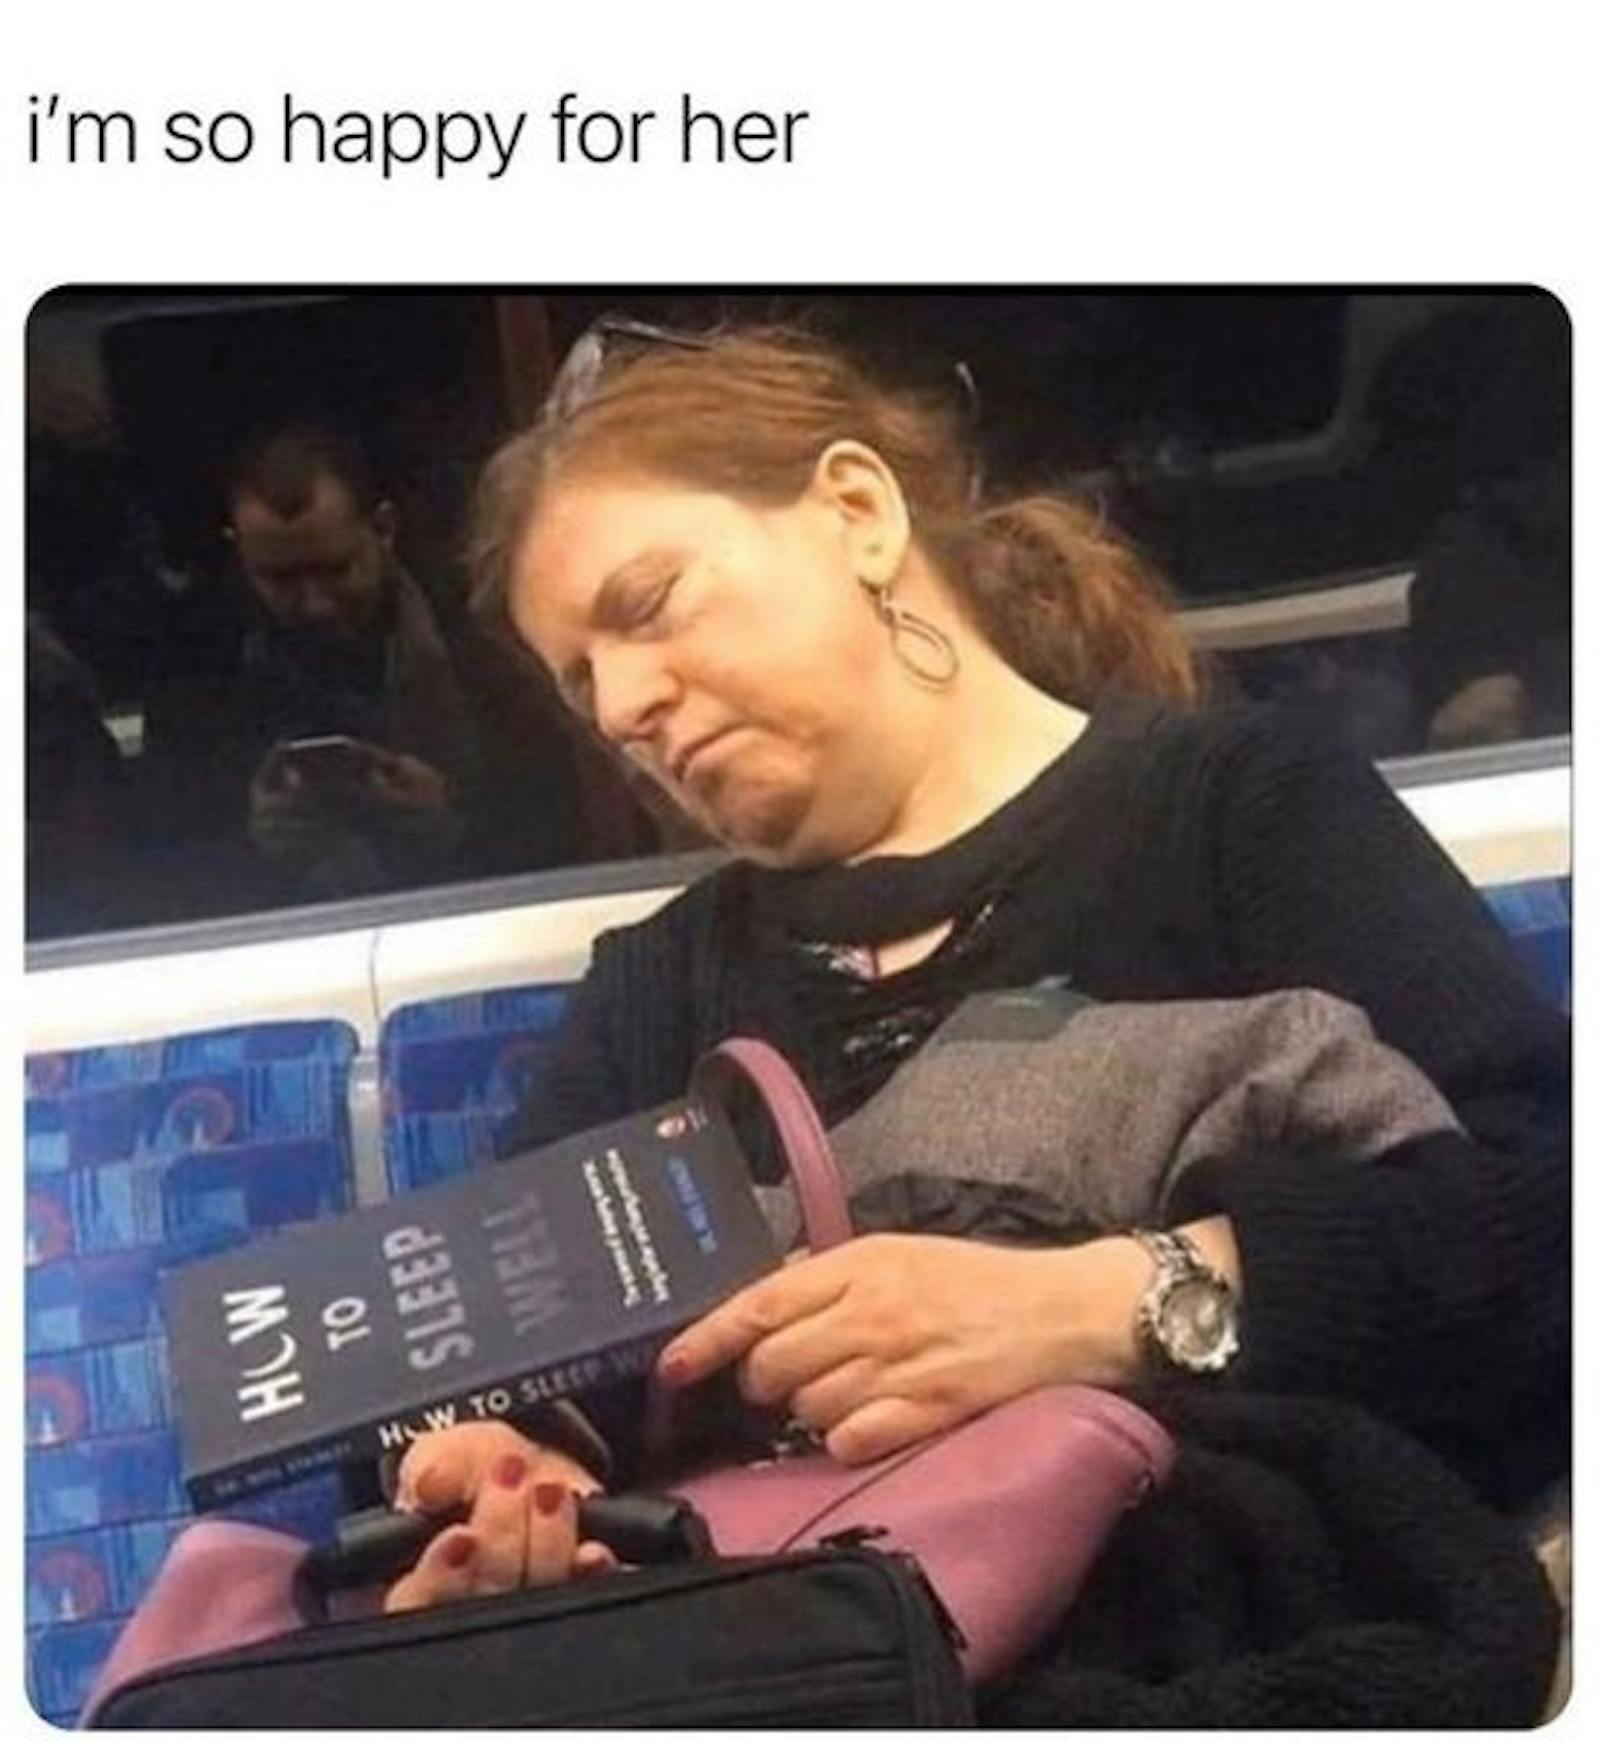 Buch-Titel: "Wie du besser schläfst" - Das Meme dazu. "Ich freue&nbsp; mich sehr für sie."